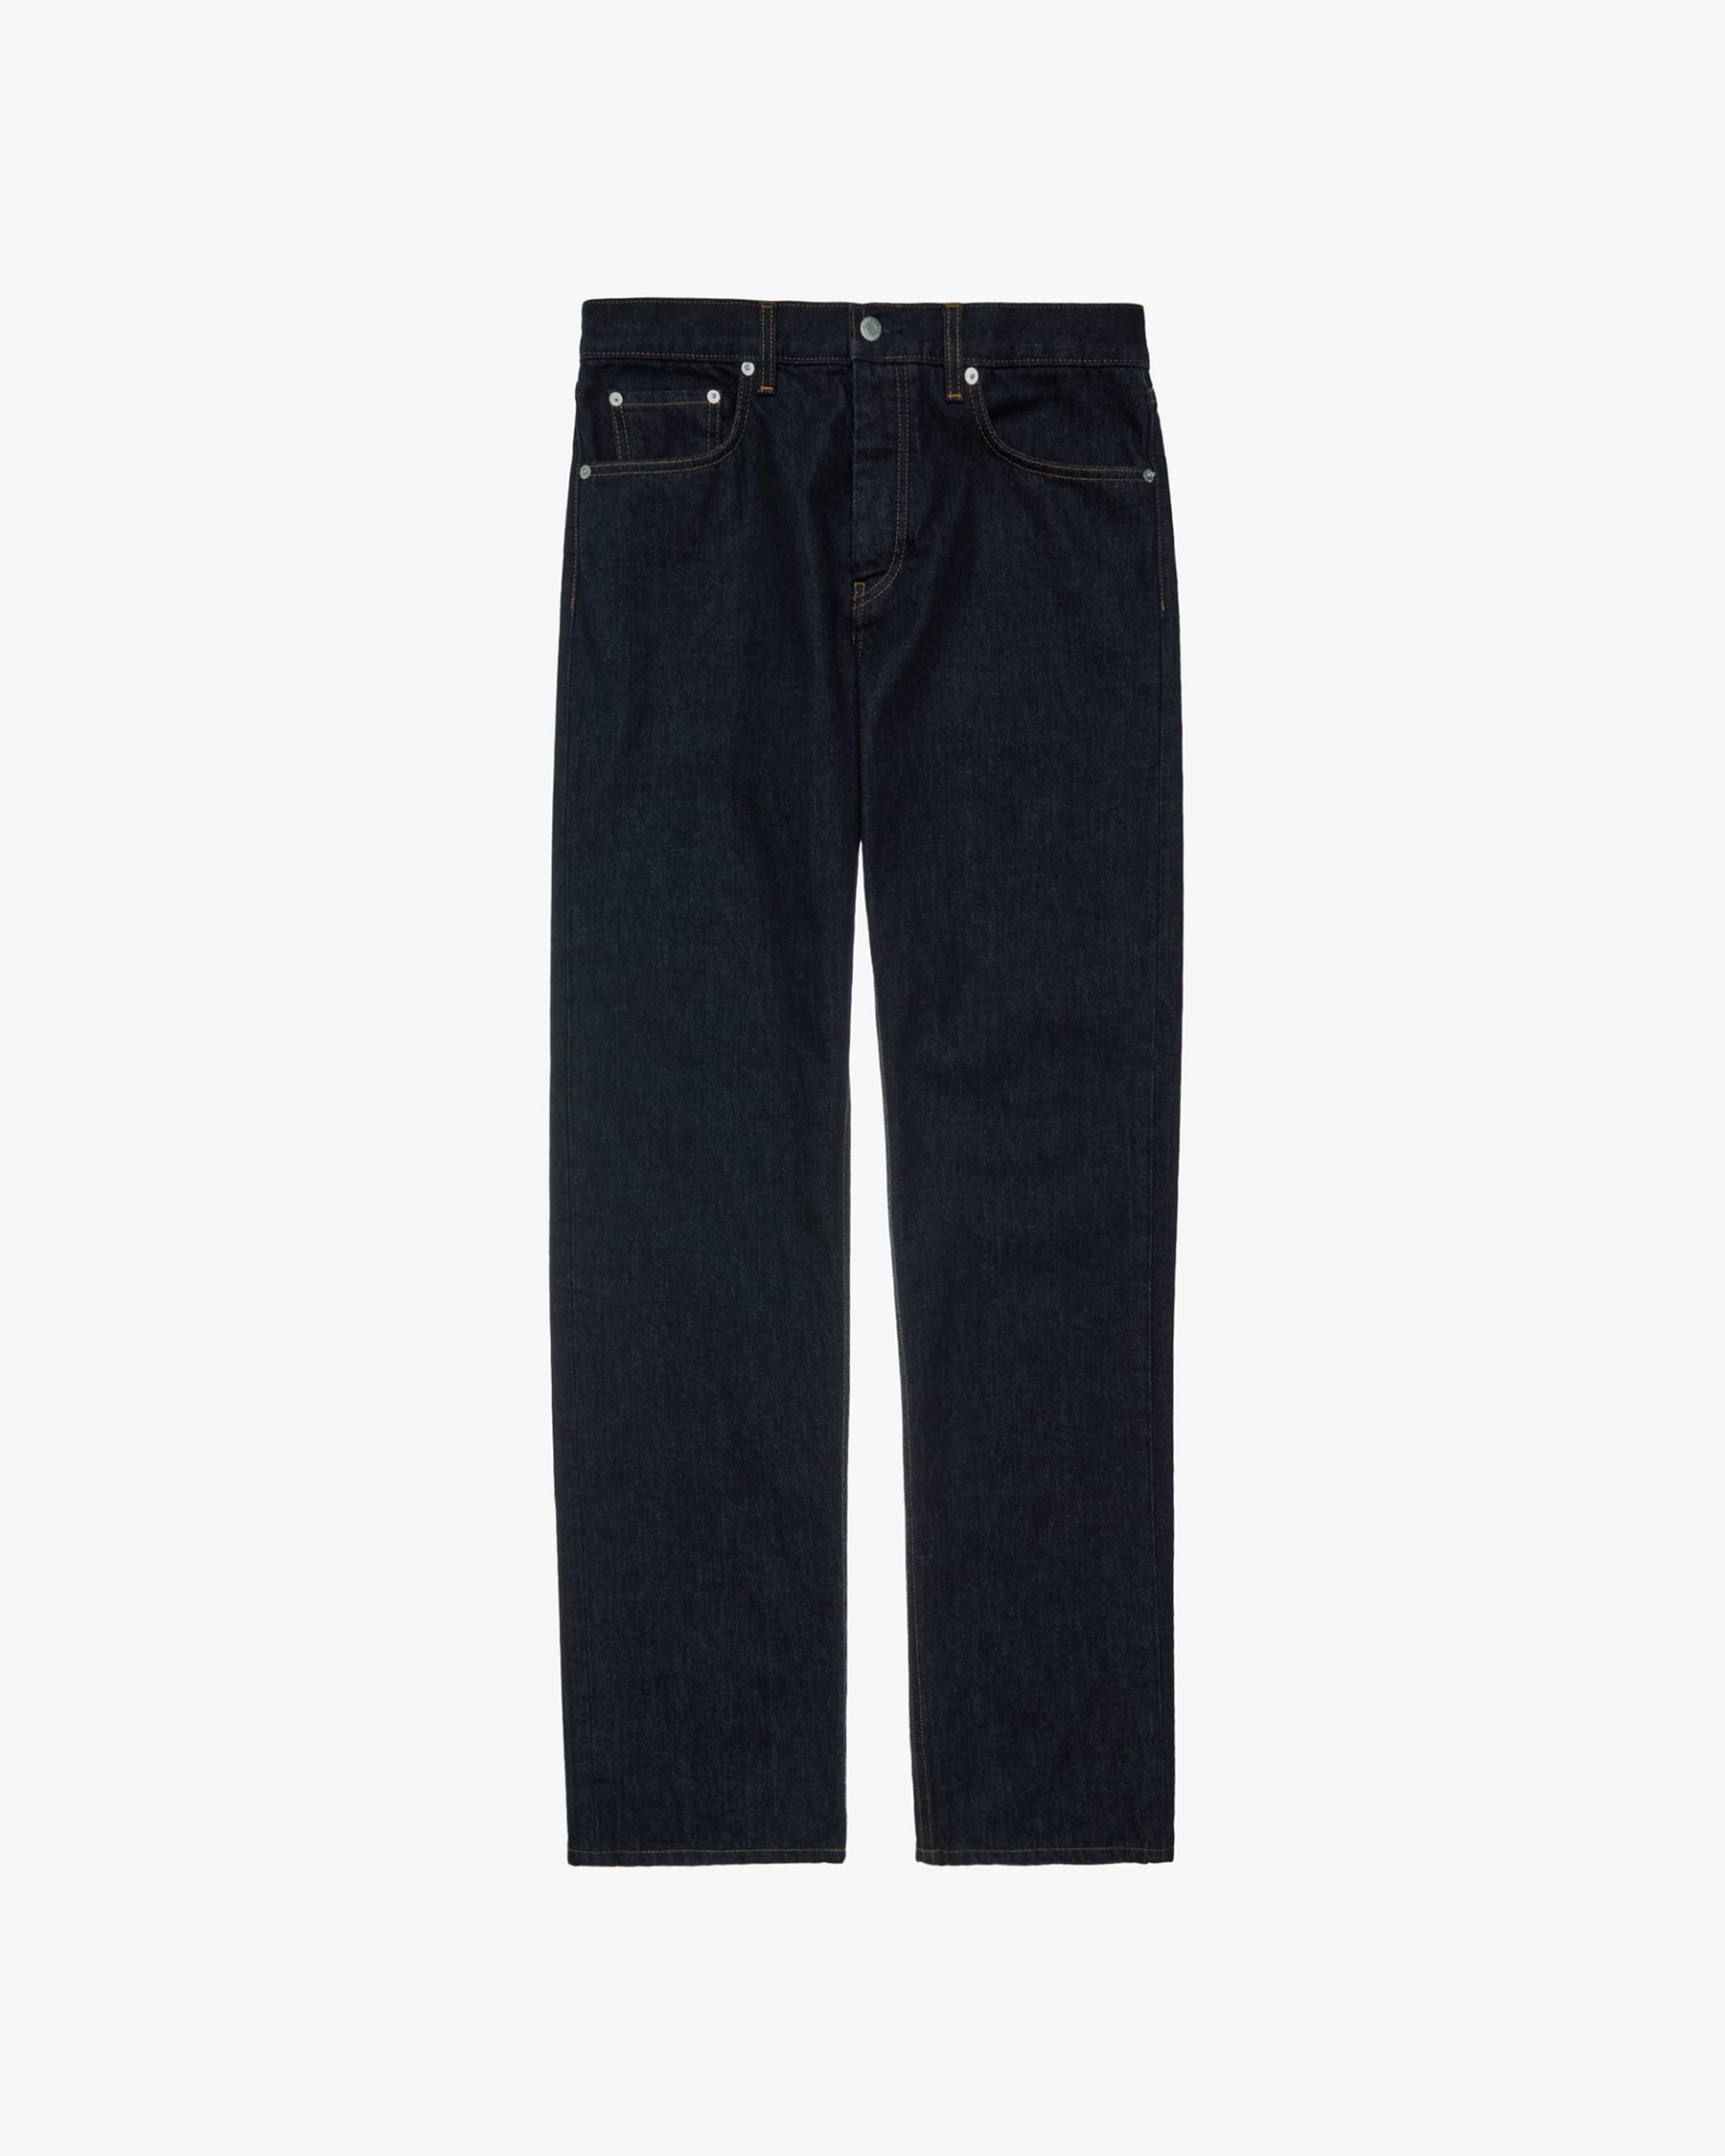 ‘98 Classic Cut Jean